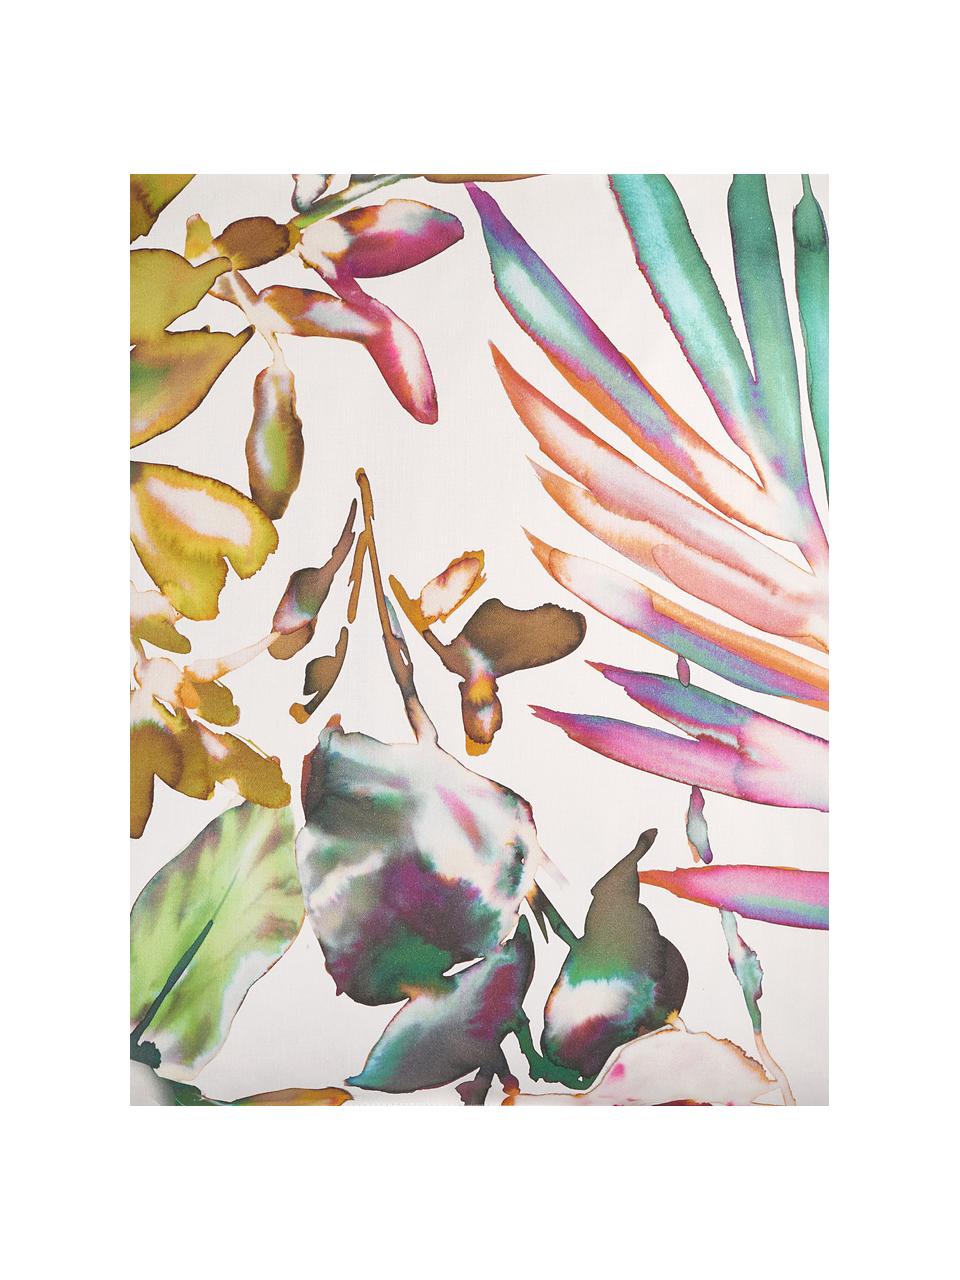 Kissenhülle Juanita mit buntem, tropischen Print, 100% Baumwolle, Weiß, Mehrfarbig, 40 x 40 cm